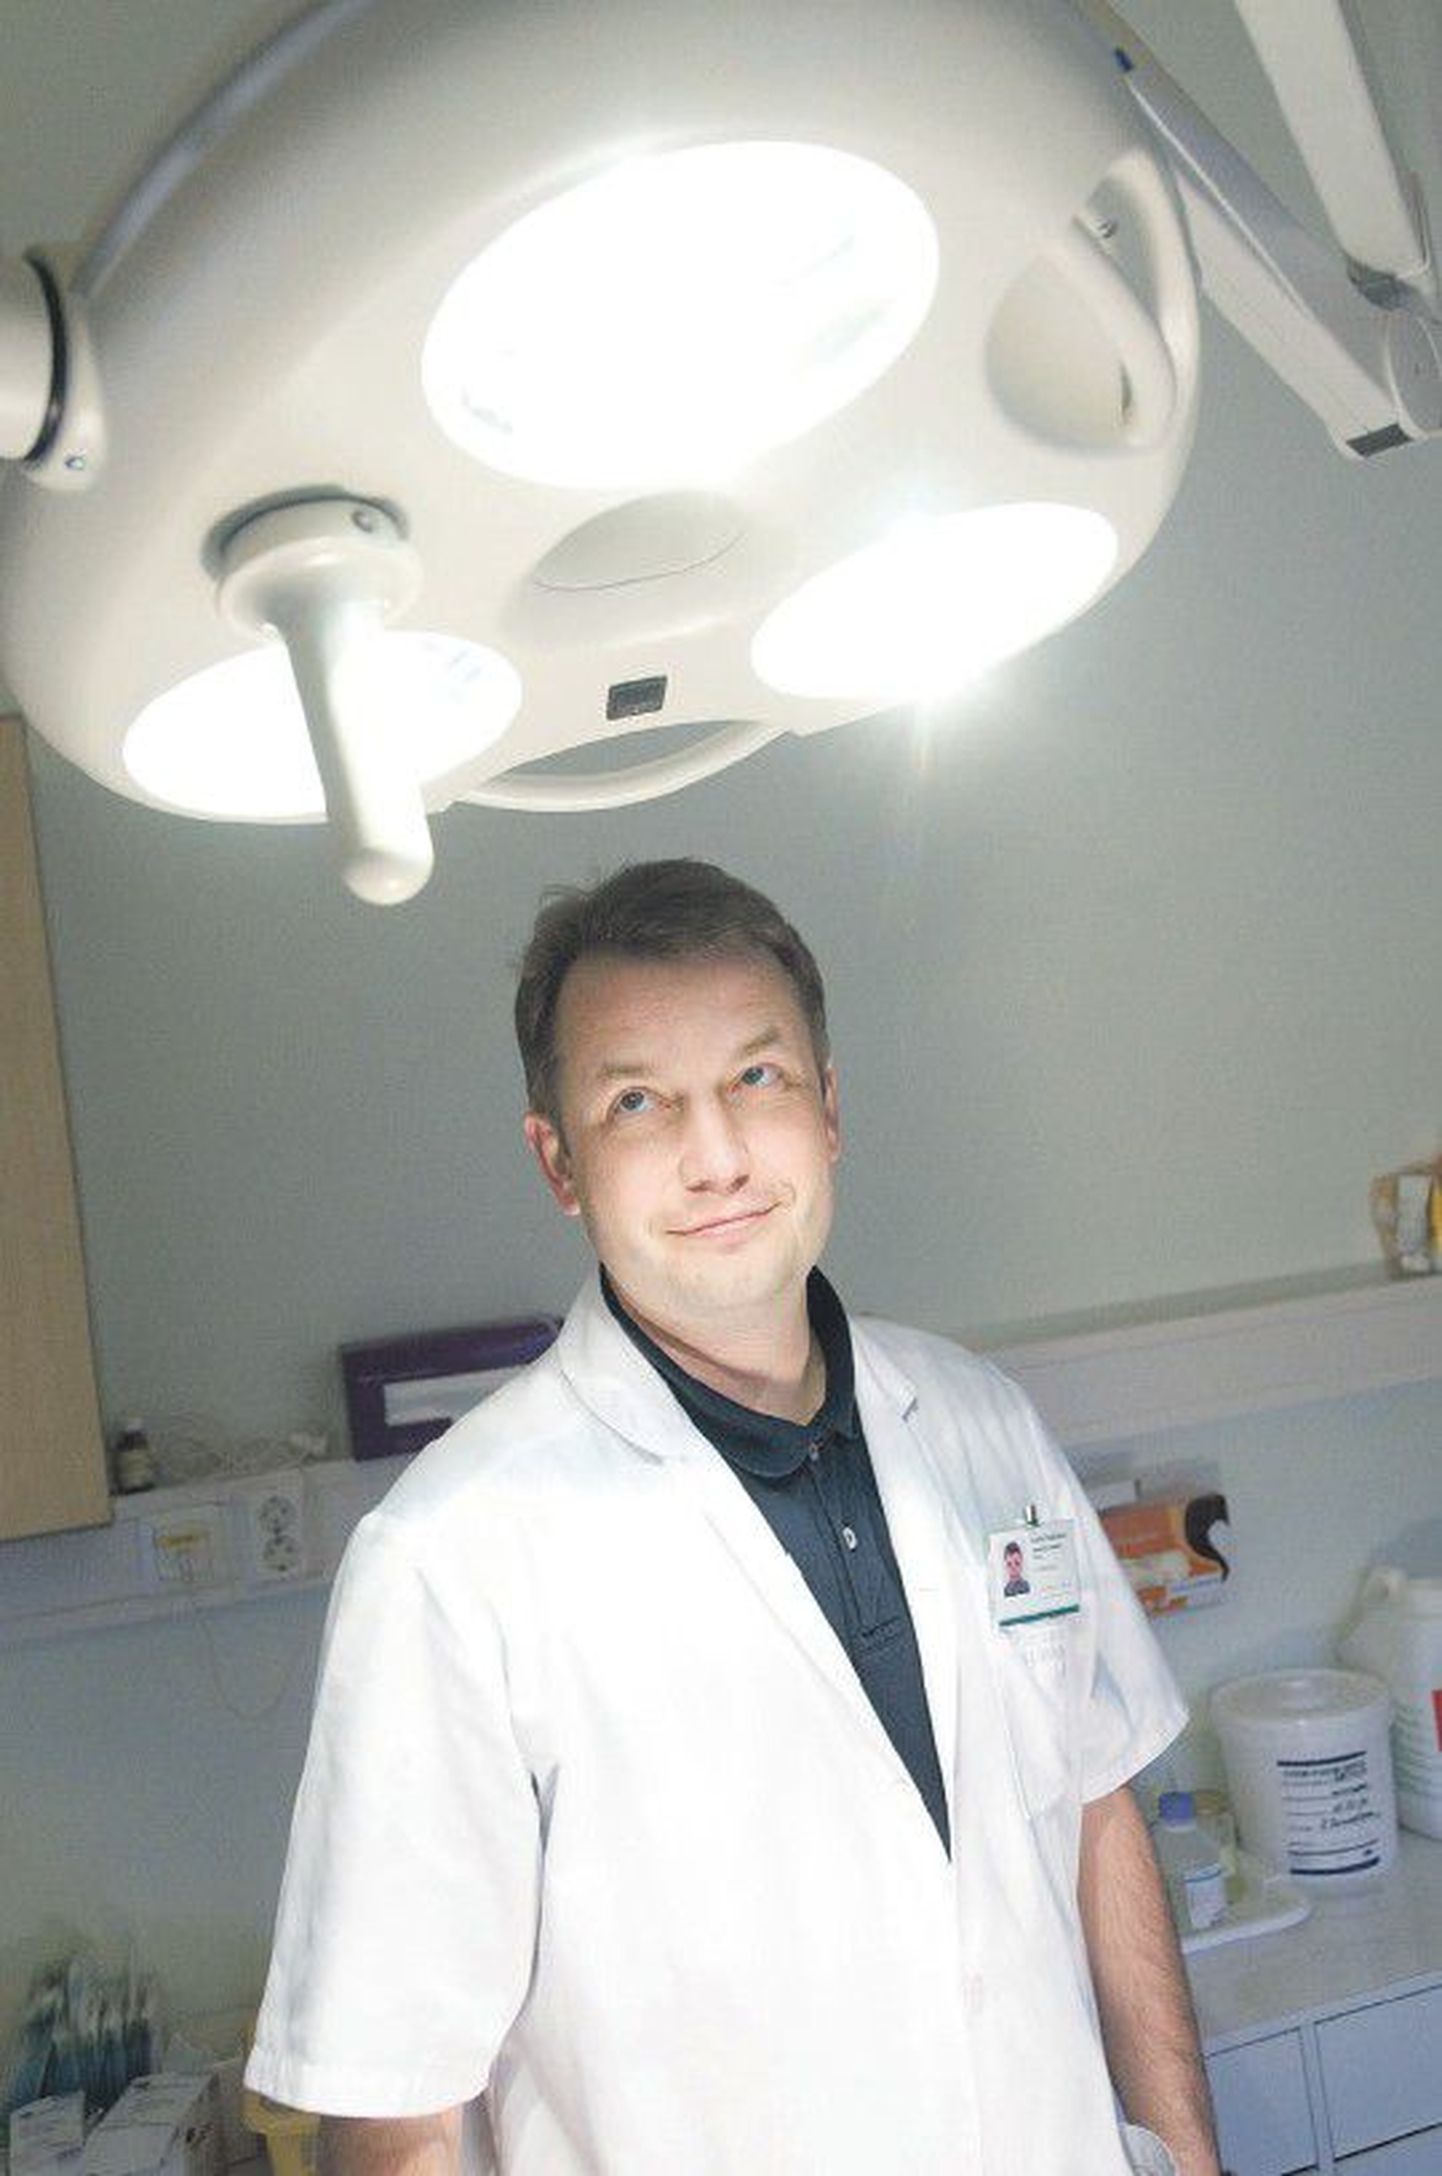 Руководитель центра общей хирургии Ида-Таллиннской центральной больницы Андре Трудников делает в течение года более ста операций по уменьшению желудка.